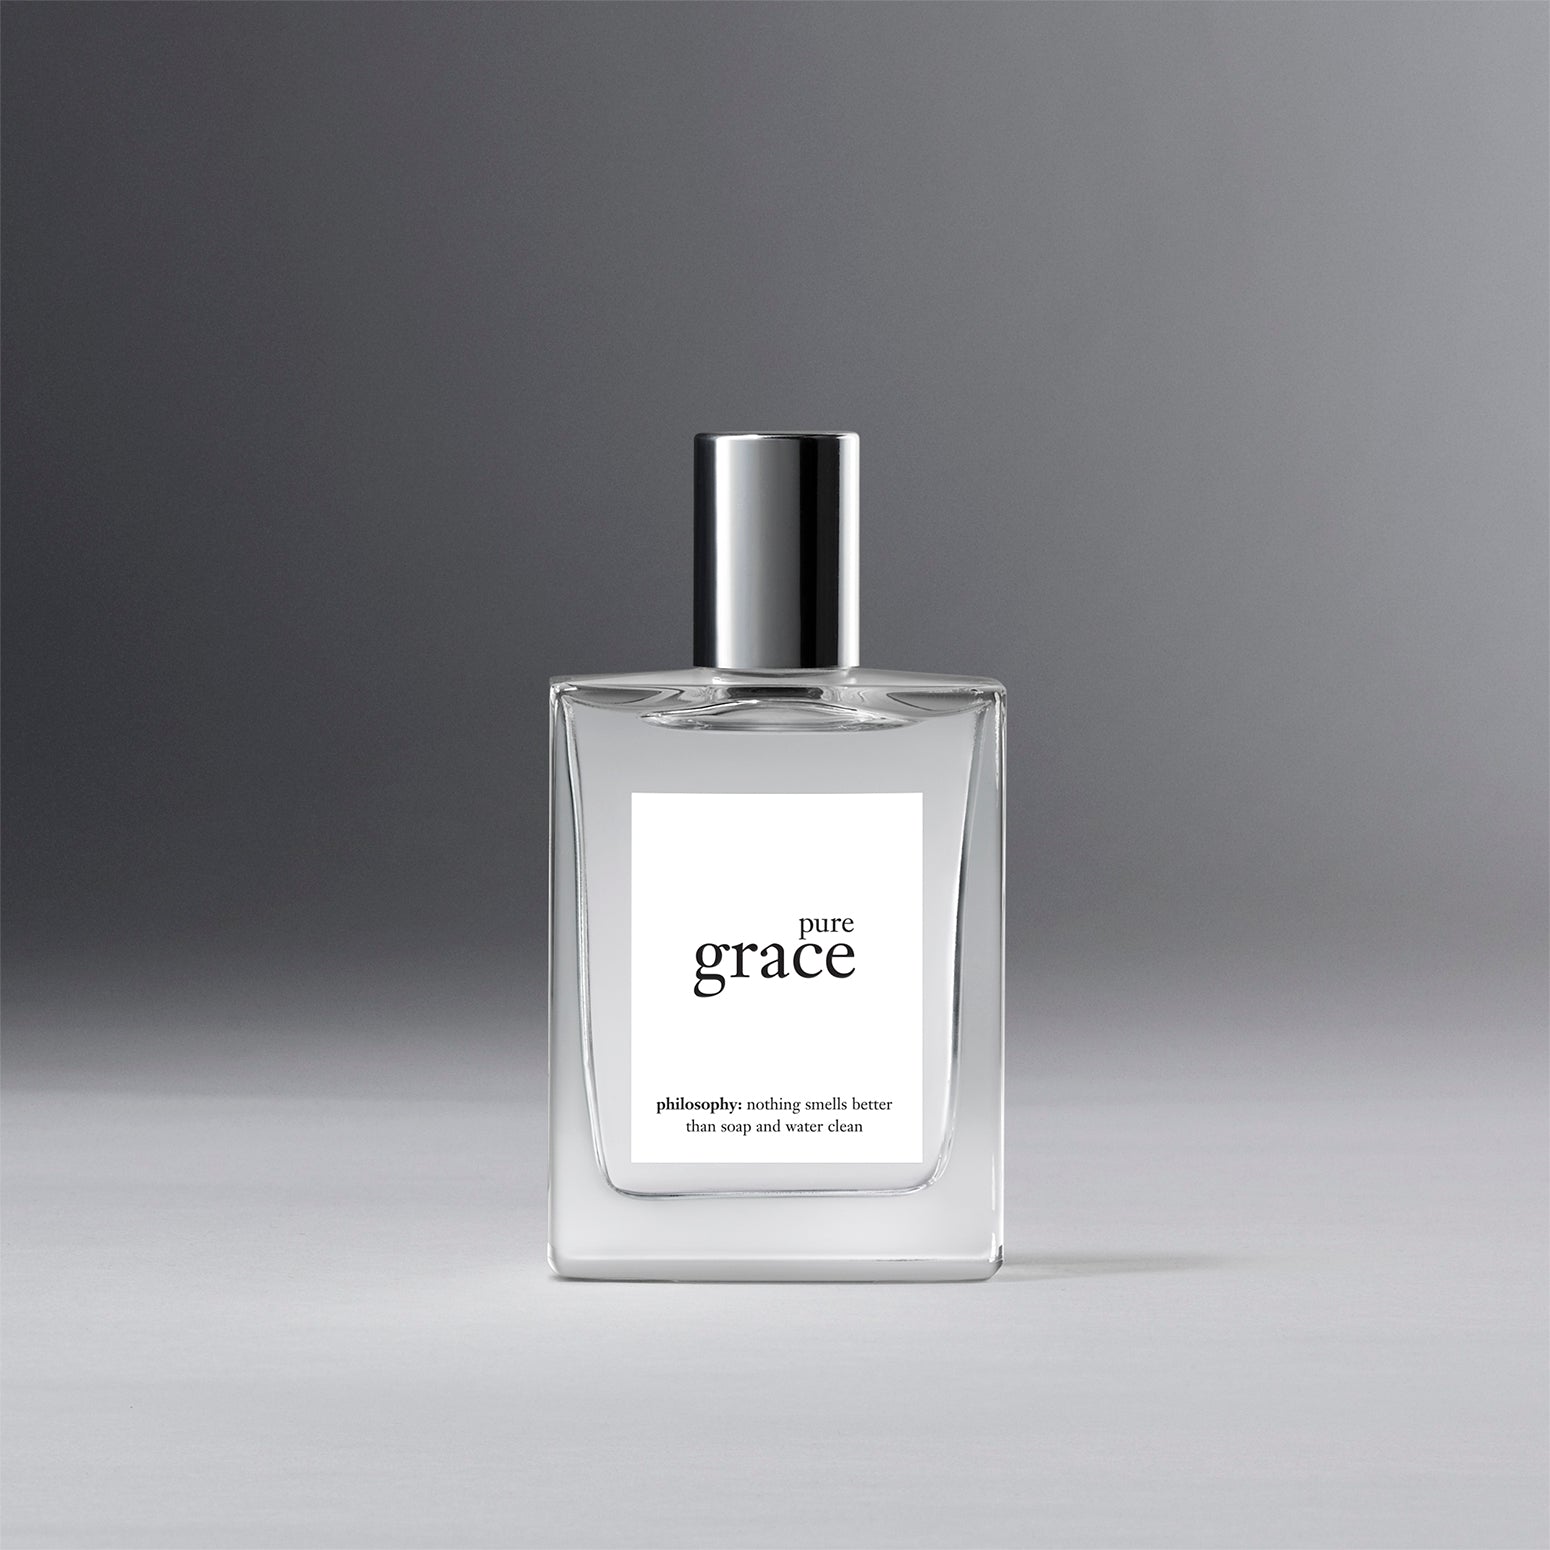 Clean Classic Pure Soap - Eau de Parfum